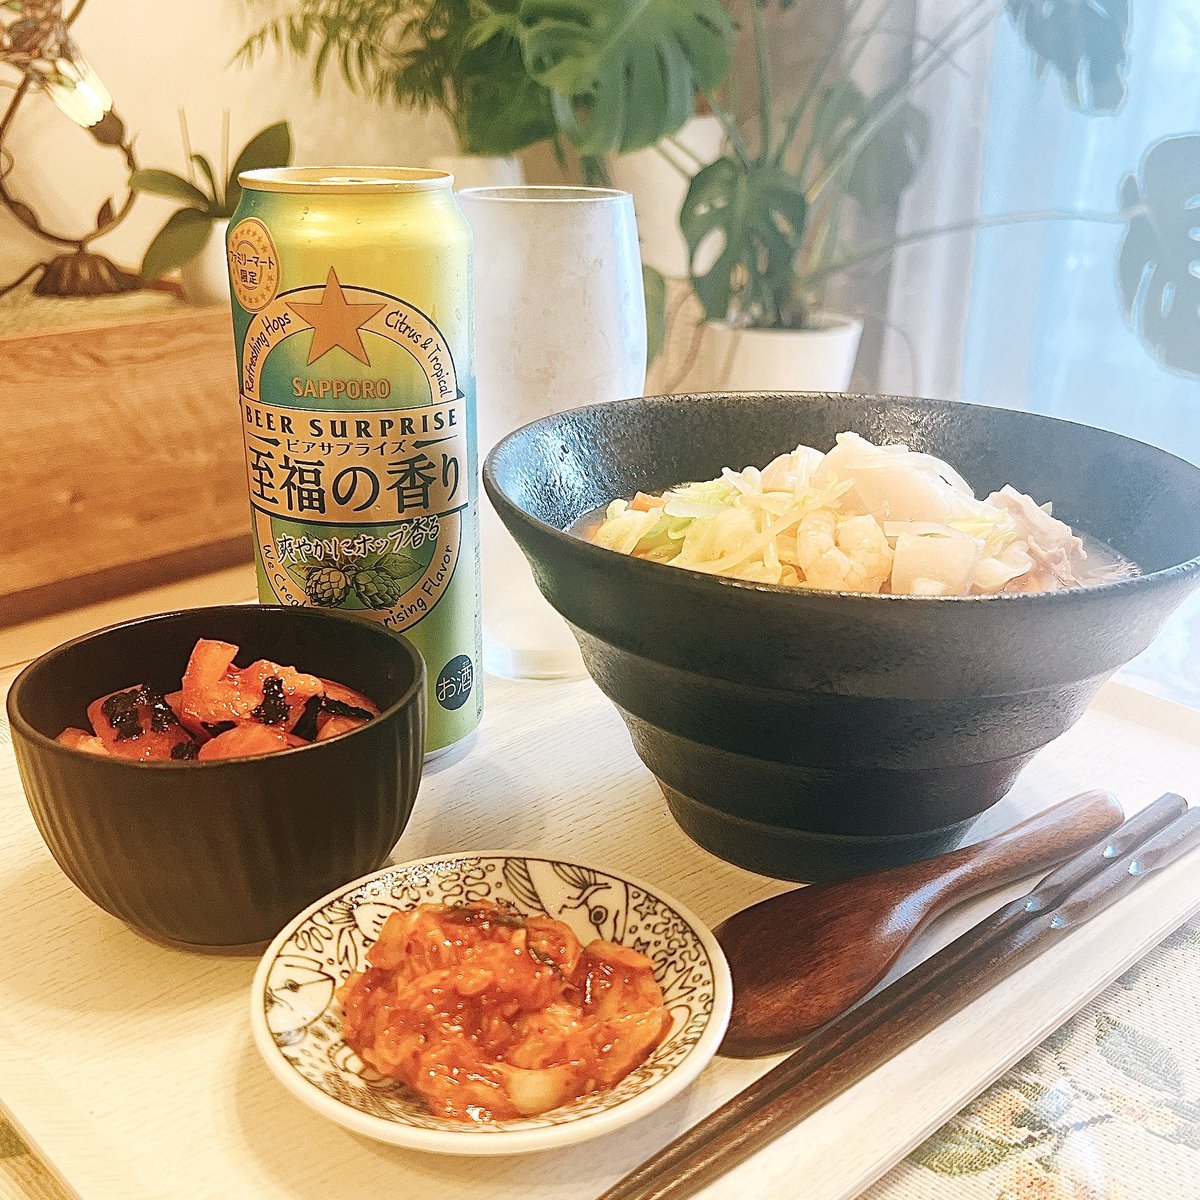 お酒は、サッポロビール。
ビアサプライズ 至福の香り。
ファミマ限定(ΦωΦ)
まだ、外明るいけどお腹空いたから食べるよ。

#晩酌 #サッポロビール #至福の香り #ツイッター晩酌部 #自炊 #夜ごはん #酒のつまみ  #Japanesefood #homecooking #dinner